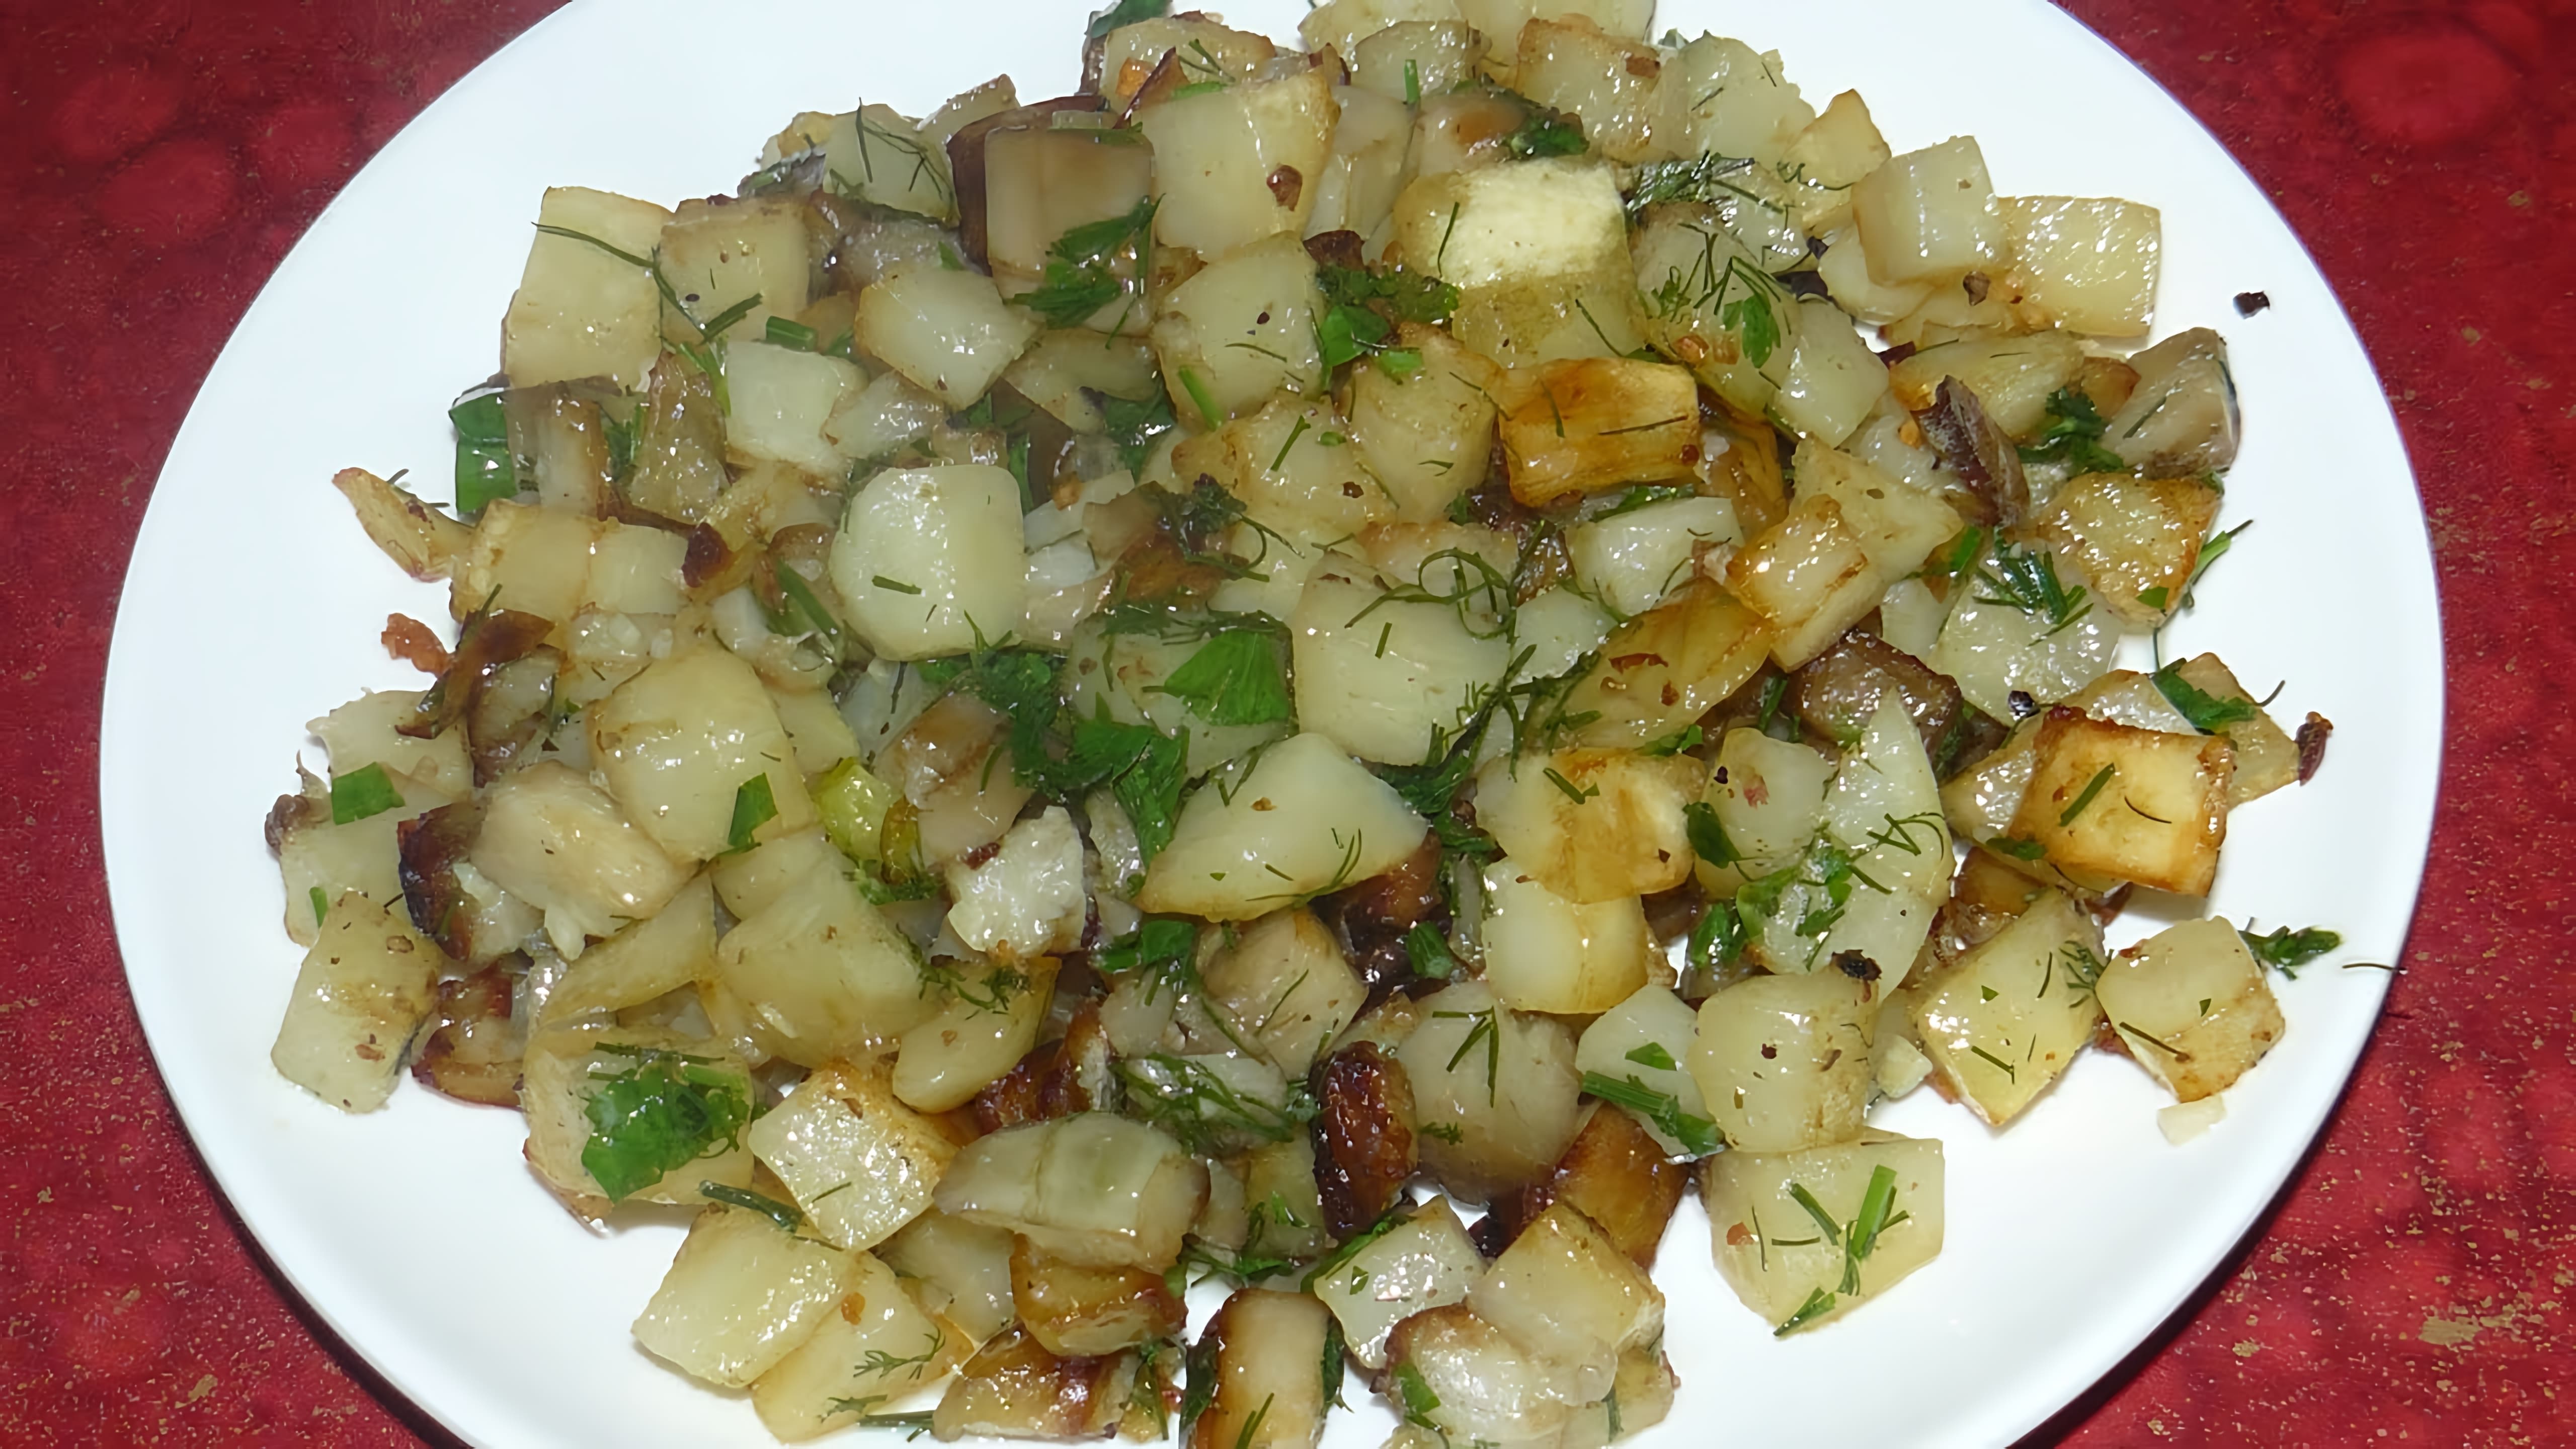 Жареная картошка с баклажанами - это вкусное и простое блюдо, которое можно приготовить дома